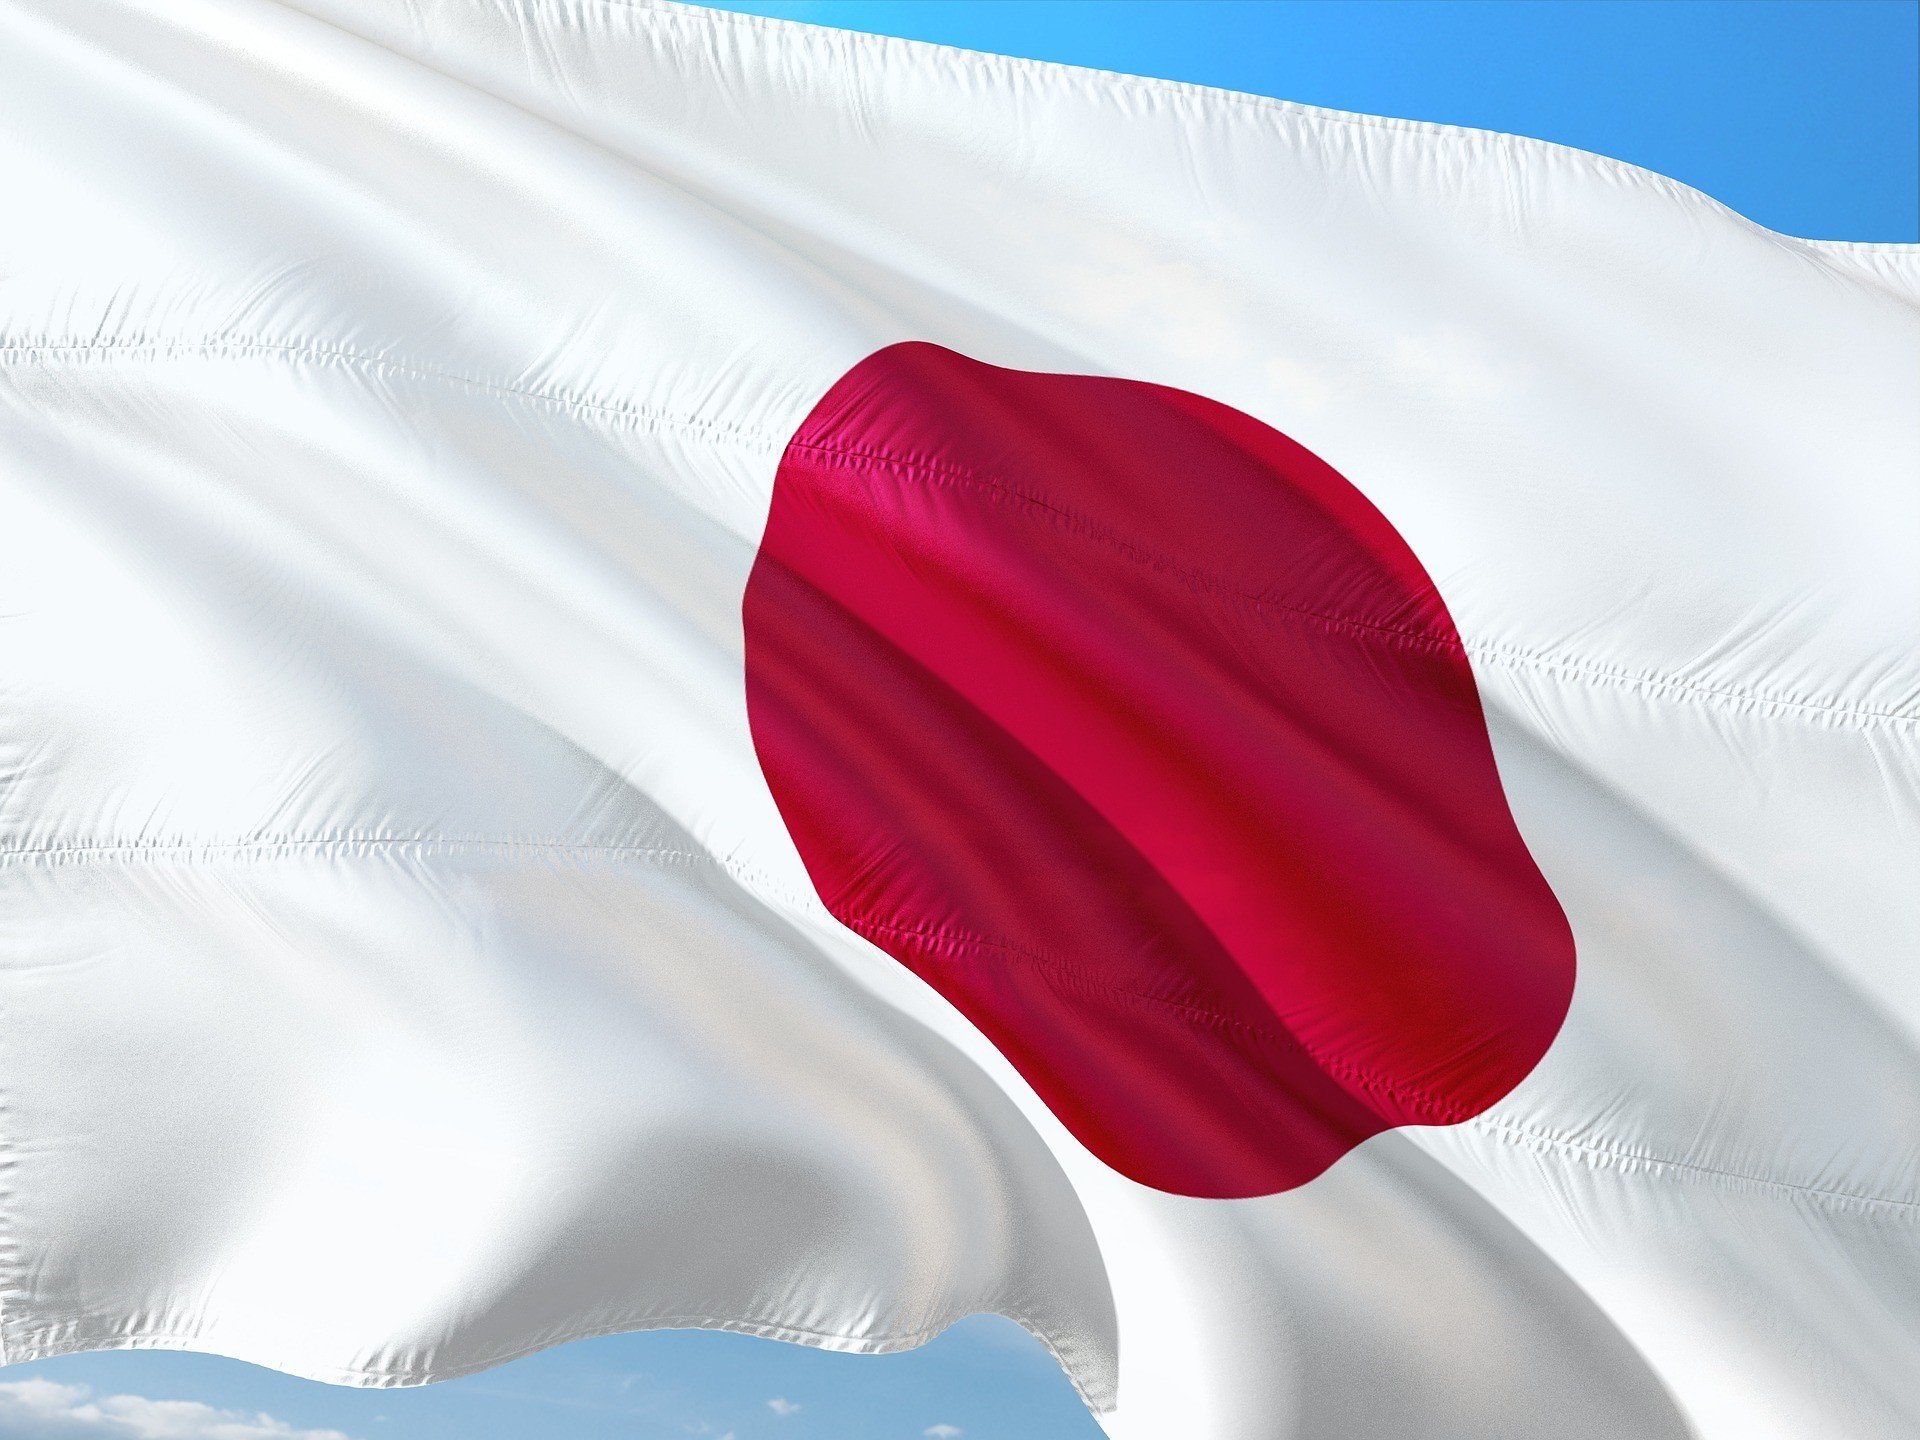 Япония начнет вводить цифровую йену